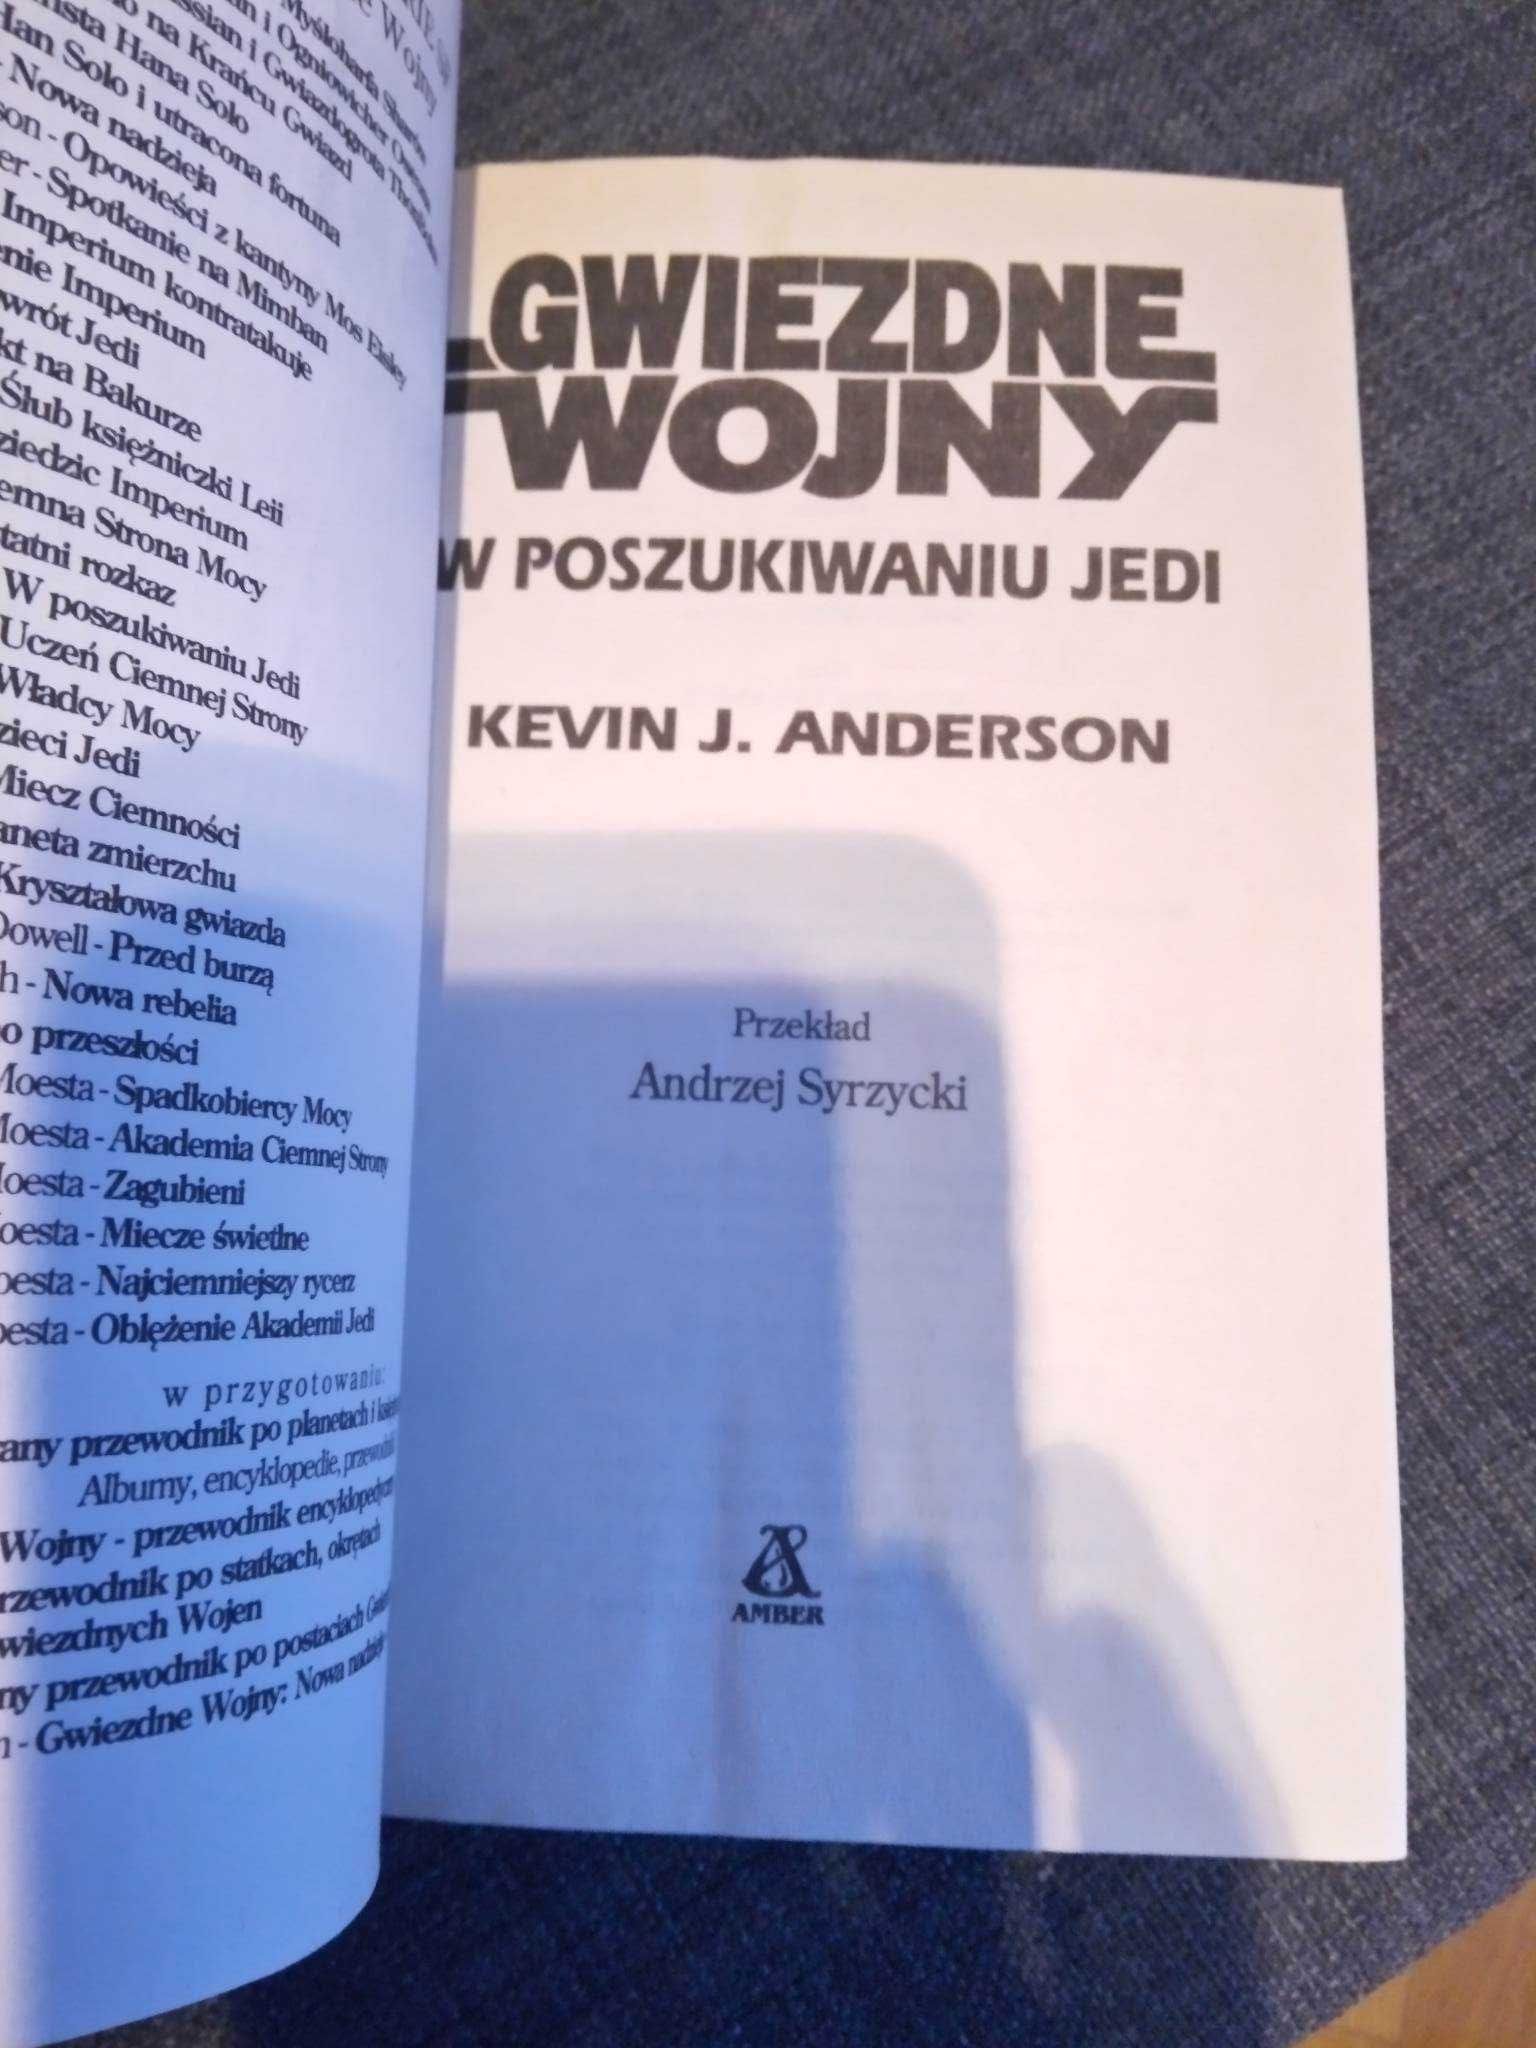 STAR WARS Gwiezdne Wojny W poszukiwaniu Jedi Kevin J. Anderson